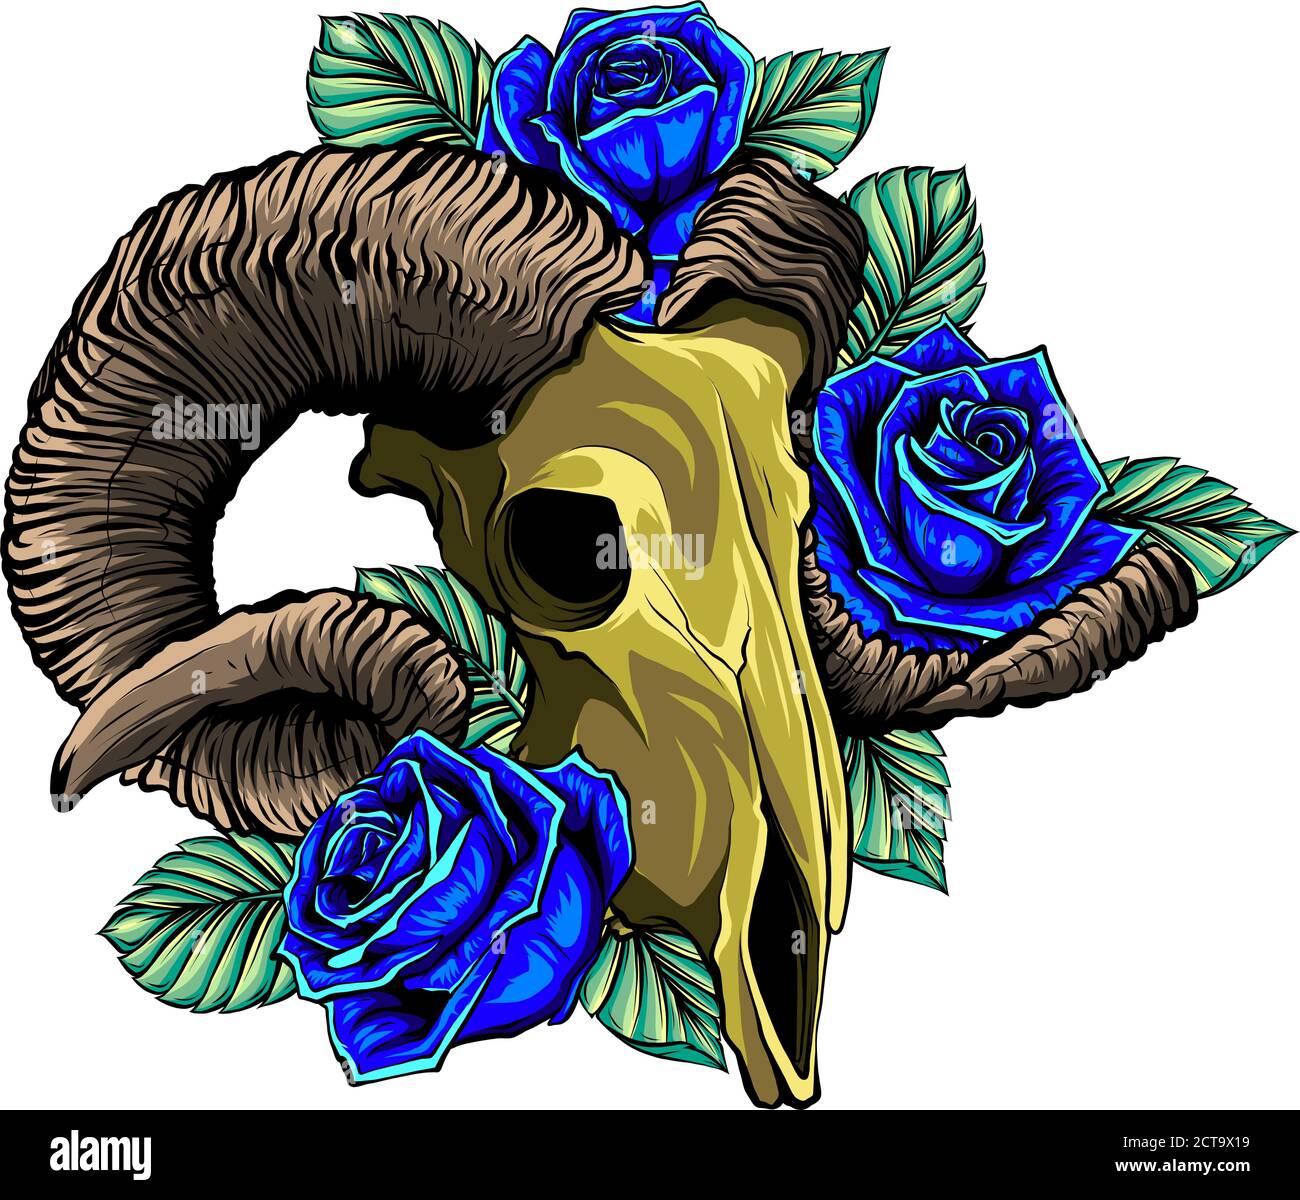 Crâne de chèvre avec de grandes cornes ligne art main isolée illustration vectorielle de stock d'esquisse tatouage dessinée Illustration de Vecteur